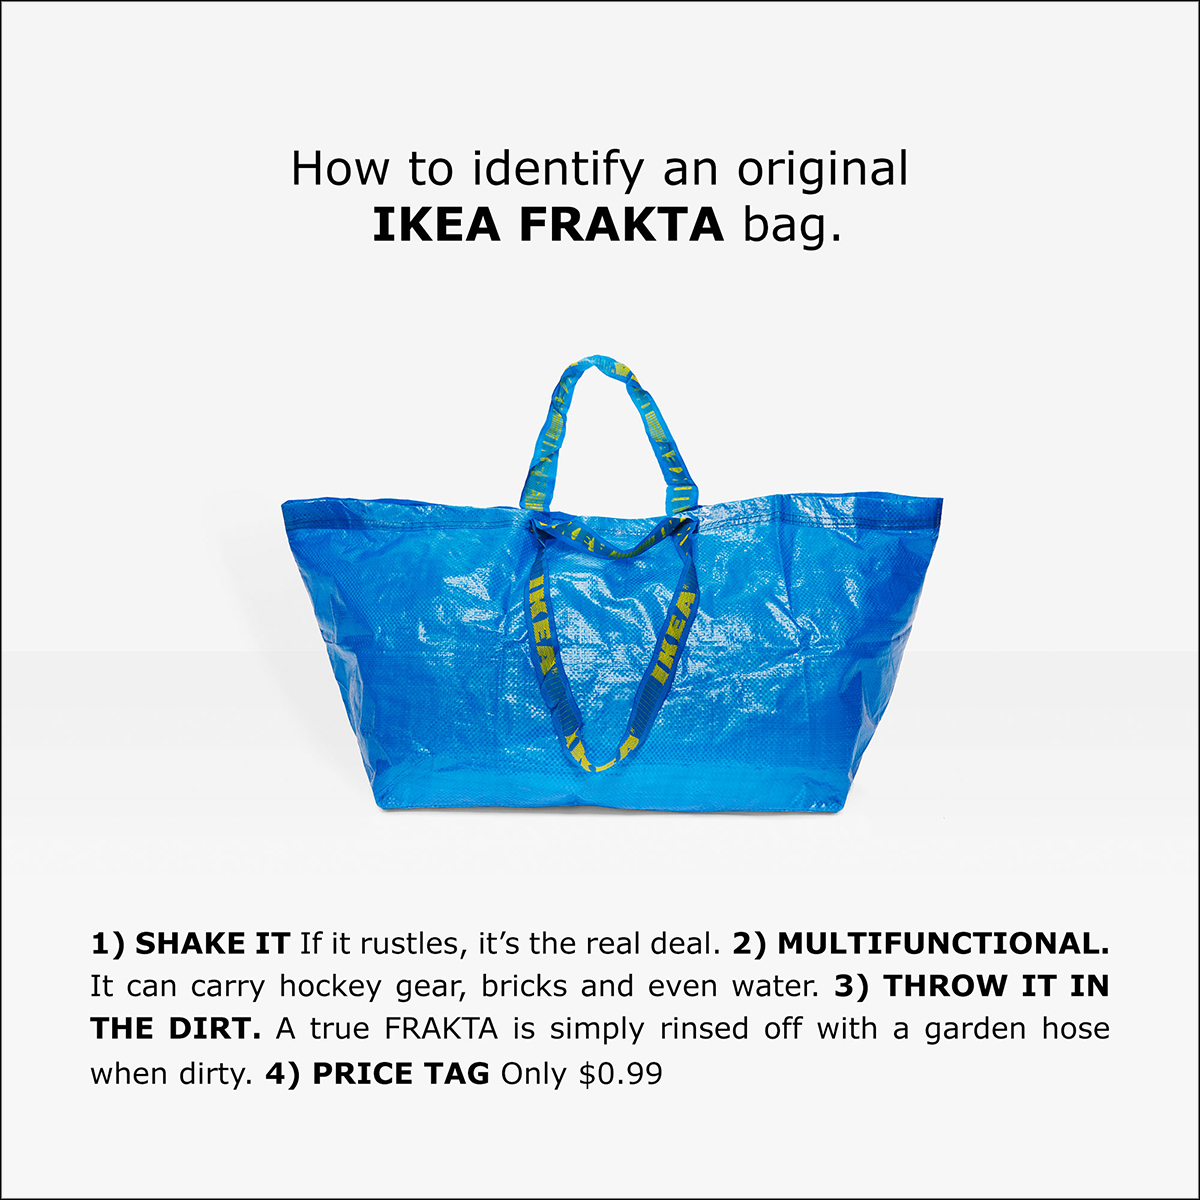 Fotografia reklamowa ukazująca dużą niebieską torbę. Na uchwytach widać żłóte napisy IKEA. Nad torbą znajduje się czarny napis "How to identify an original IKEA FRAKTA bag". Pod spodem czarne napisy "